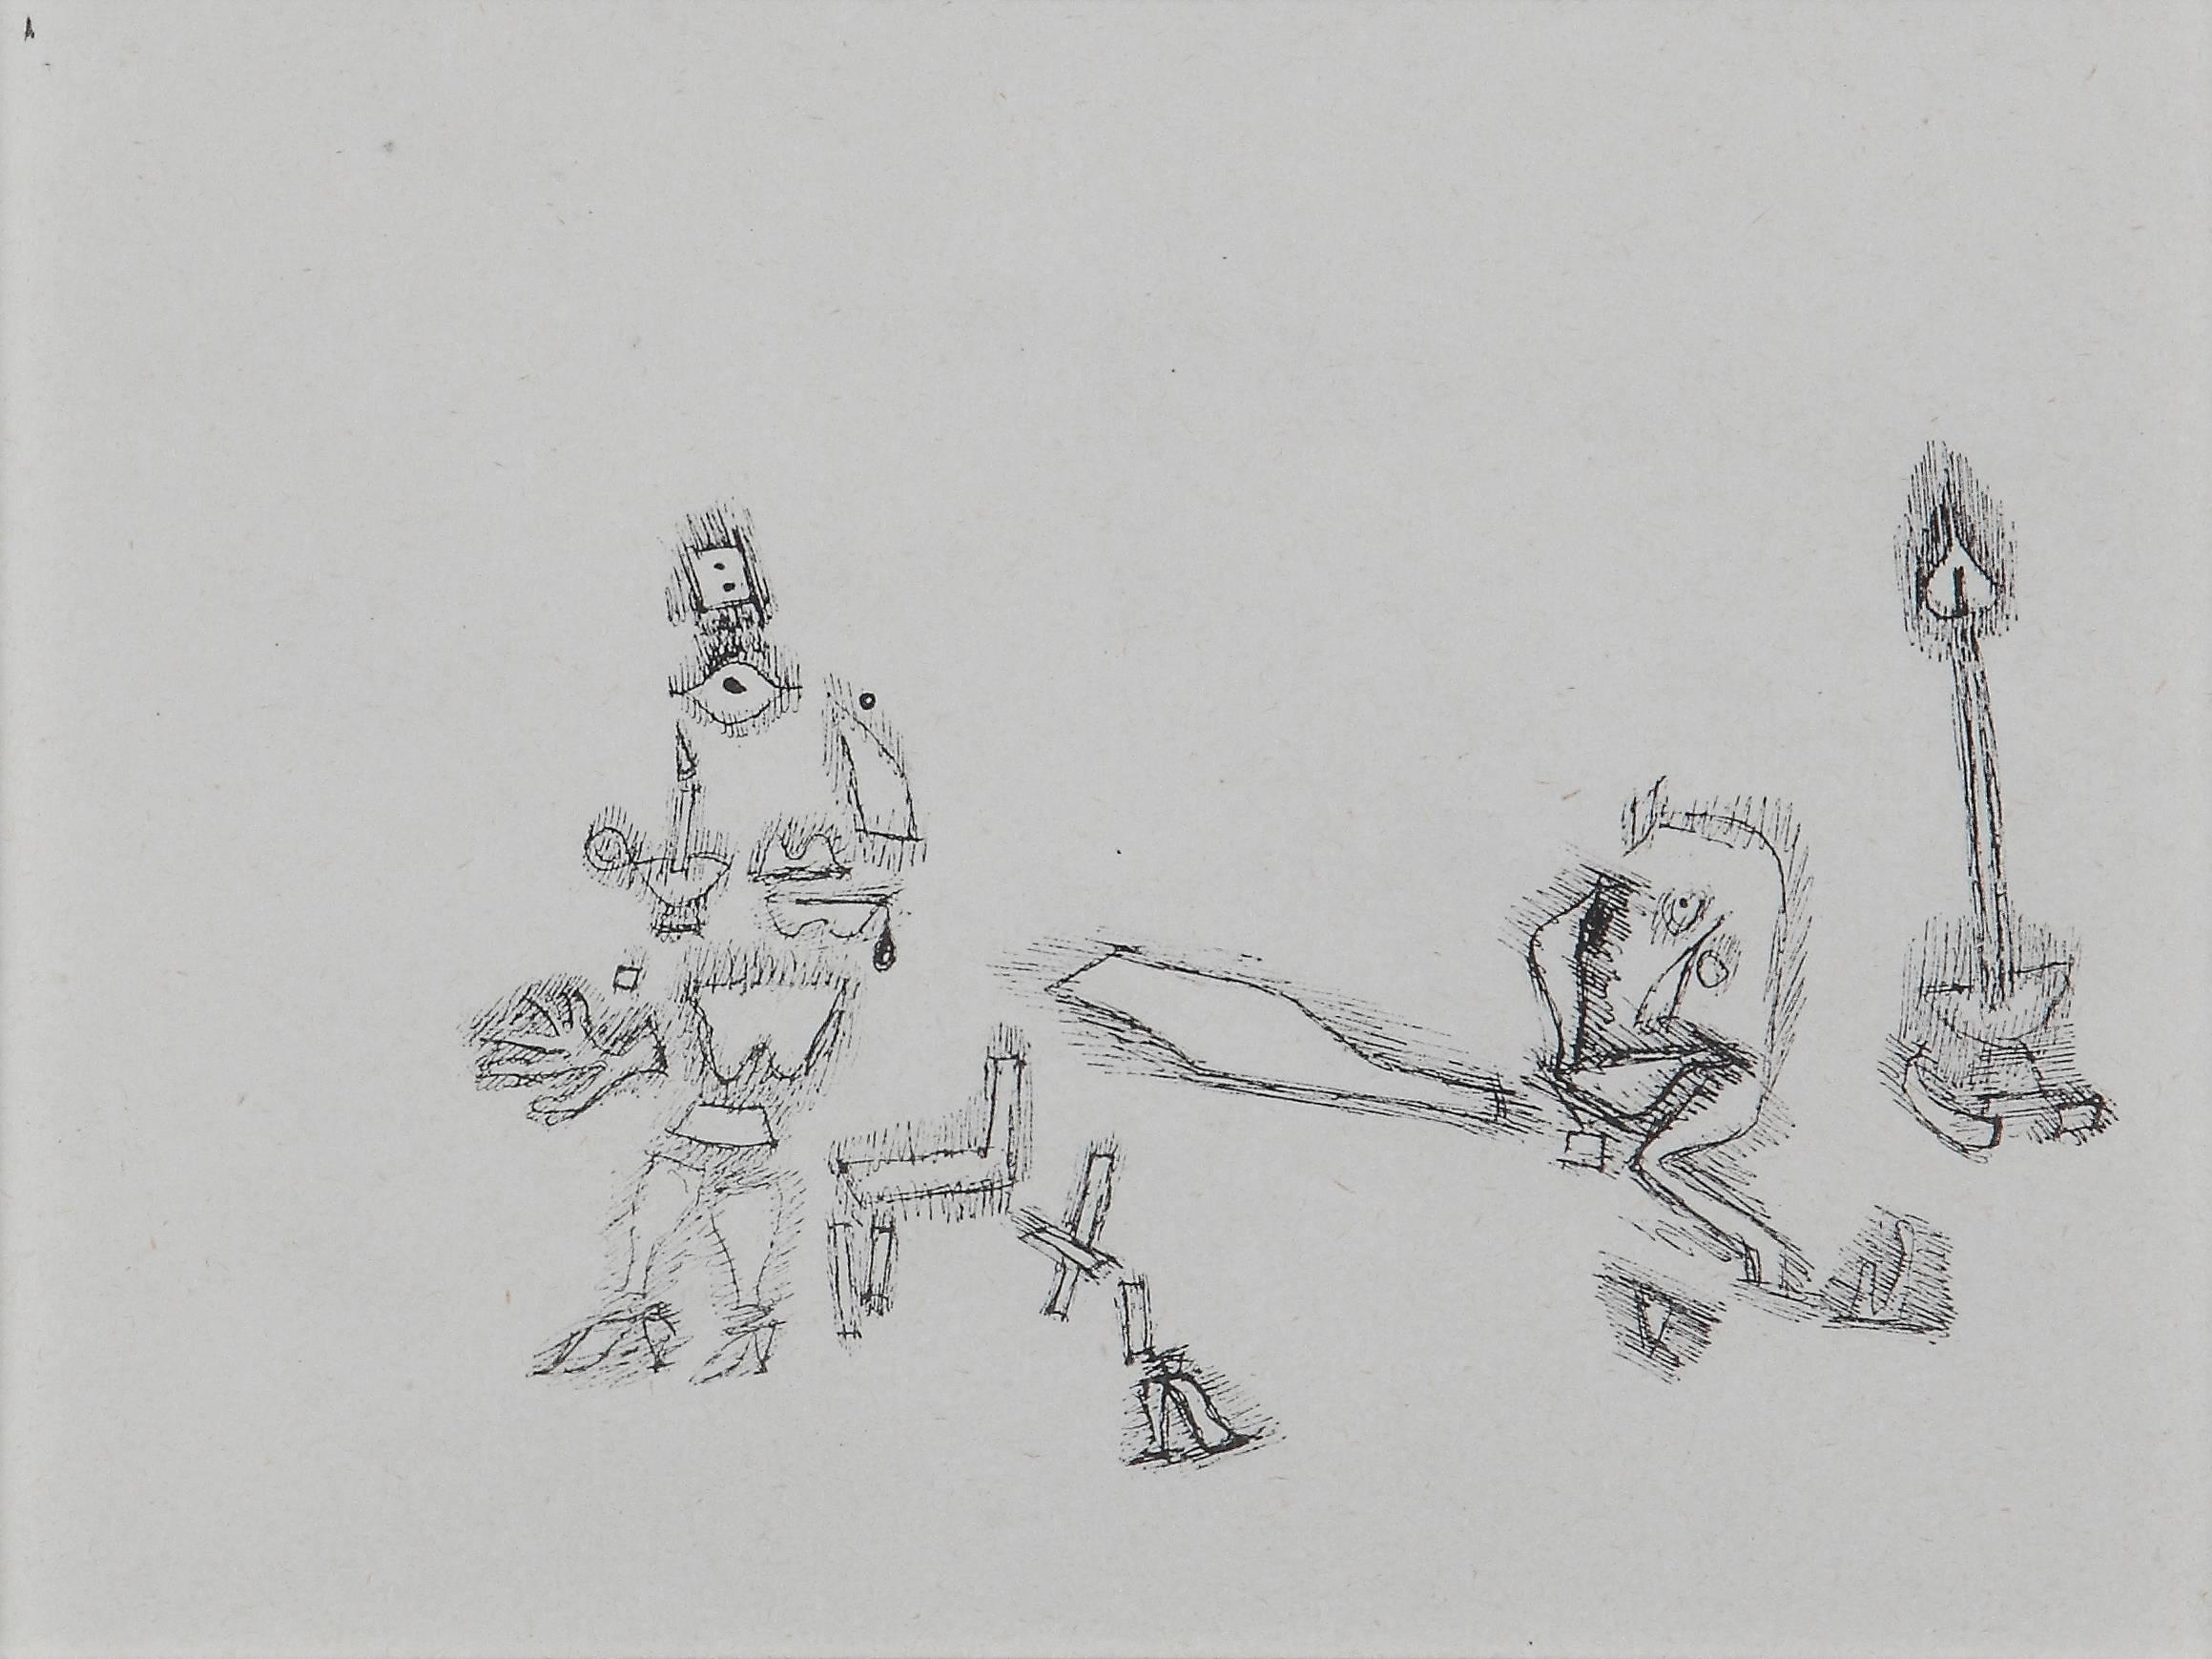 Héliogravure sur papier fait main, 1927 par Paul Klee. Du portefeuille "Paul Klee, Handzeichnungen 1921-1930" Ici no 41
Mesures : Image : 5.51 x 7.48 in ( 14 x 19 cm ), Encadré : 13.43 x 15.16 x 0.59 in ( 34,1 x 38,5 x 1,5 cm )

 